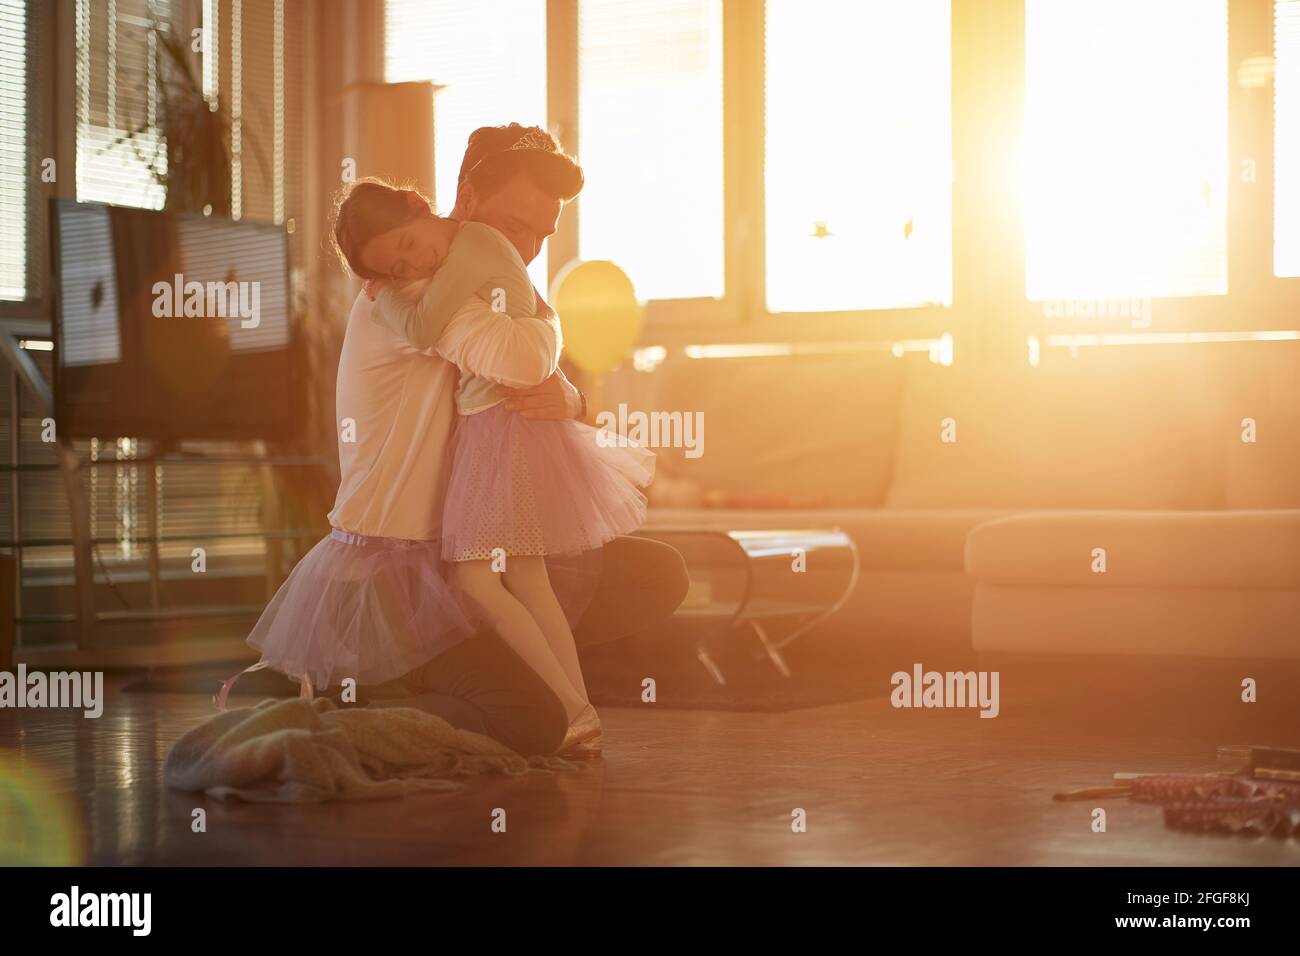 Ein junger Vater und seine kleine Tochter sind voller Emotionen, während sie zu Hause in einer schönen Atmosphäre ein Balletttraining machen. Familie, zusammen, ho Stockfoto